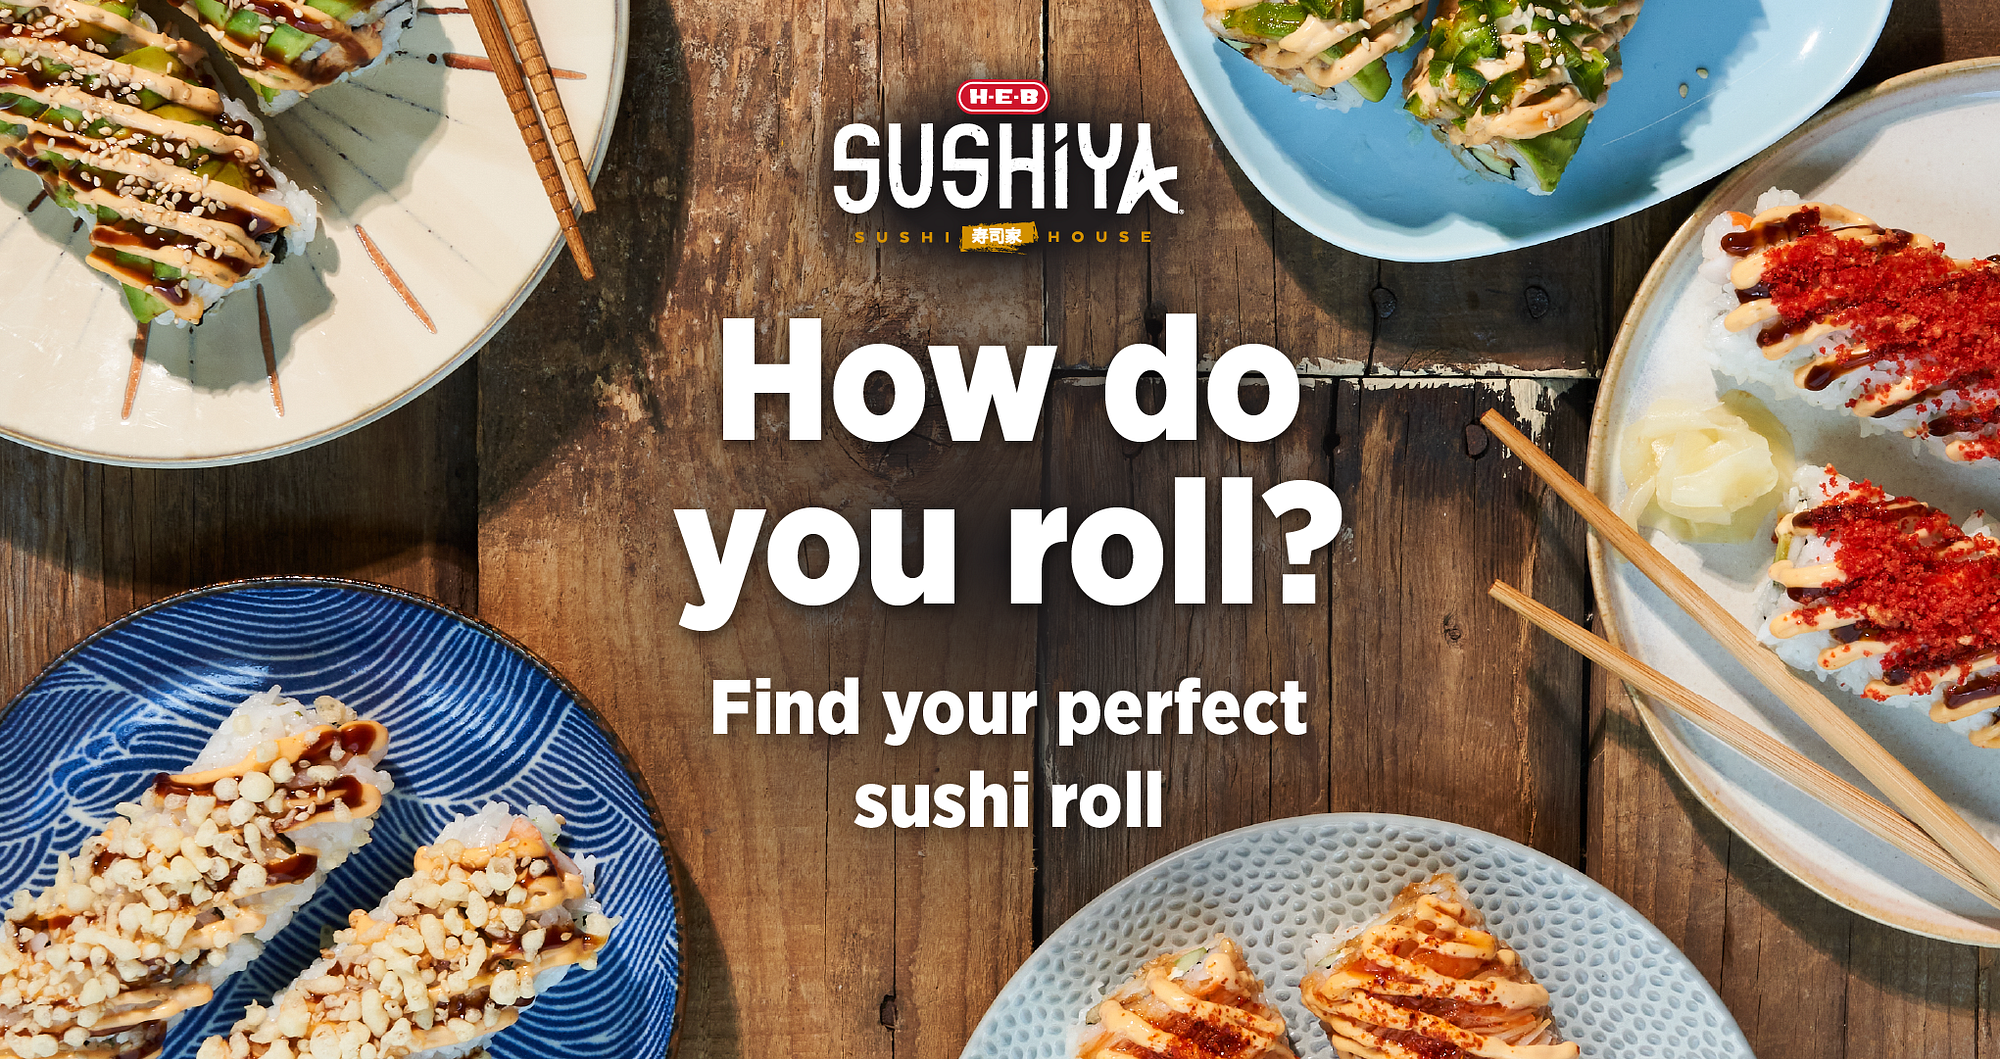 H-E-B Sushiya Texan Sushi Roll